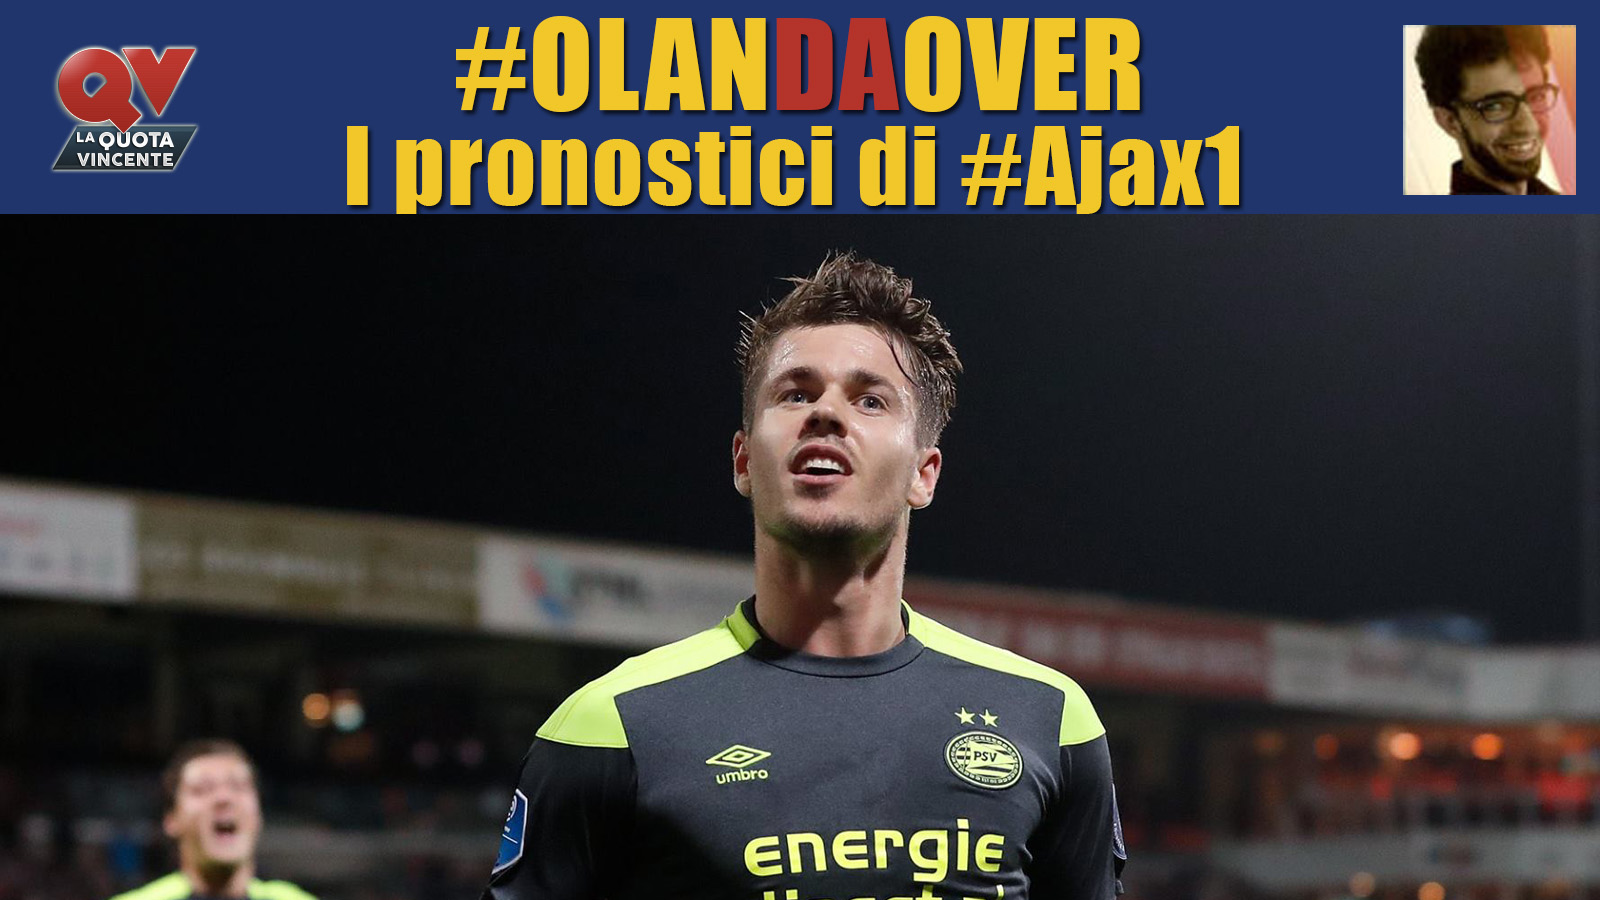 Pronostici Eredivisie giornata 13: tutte le quote e le bollette di #OlanDaOver il blog di #Ajax1!